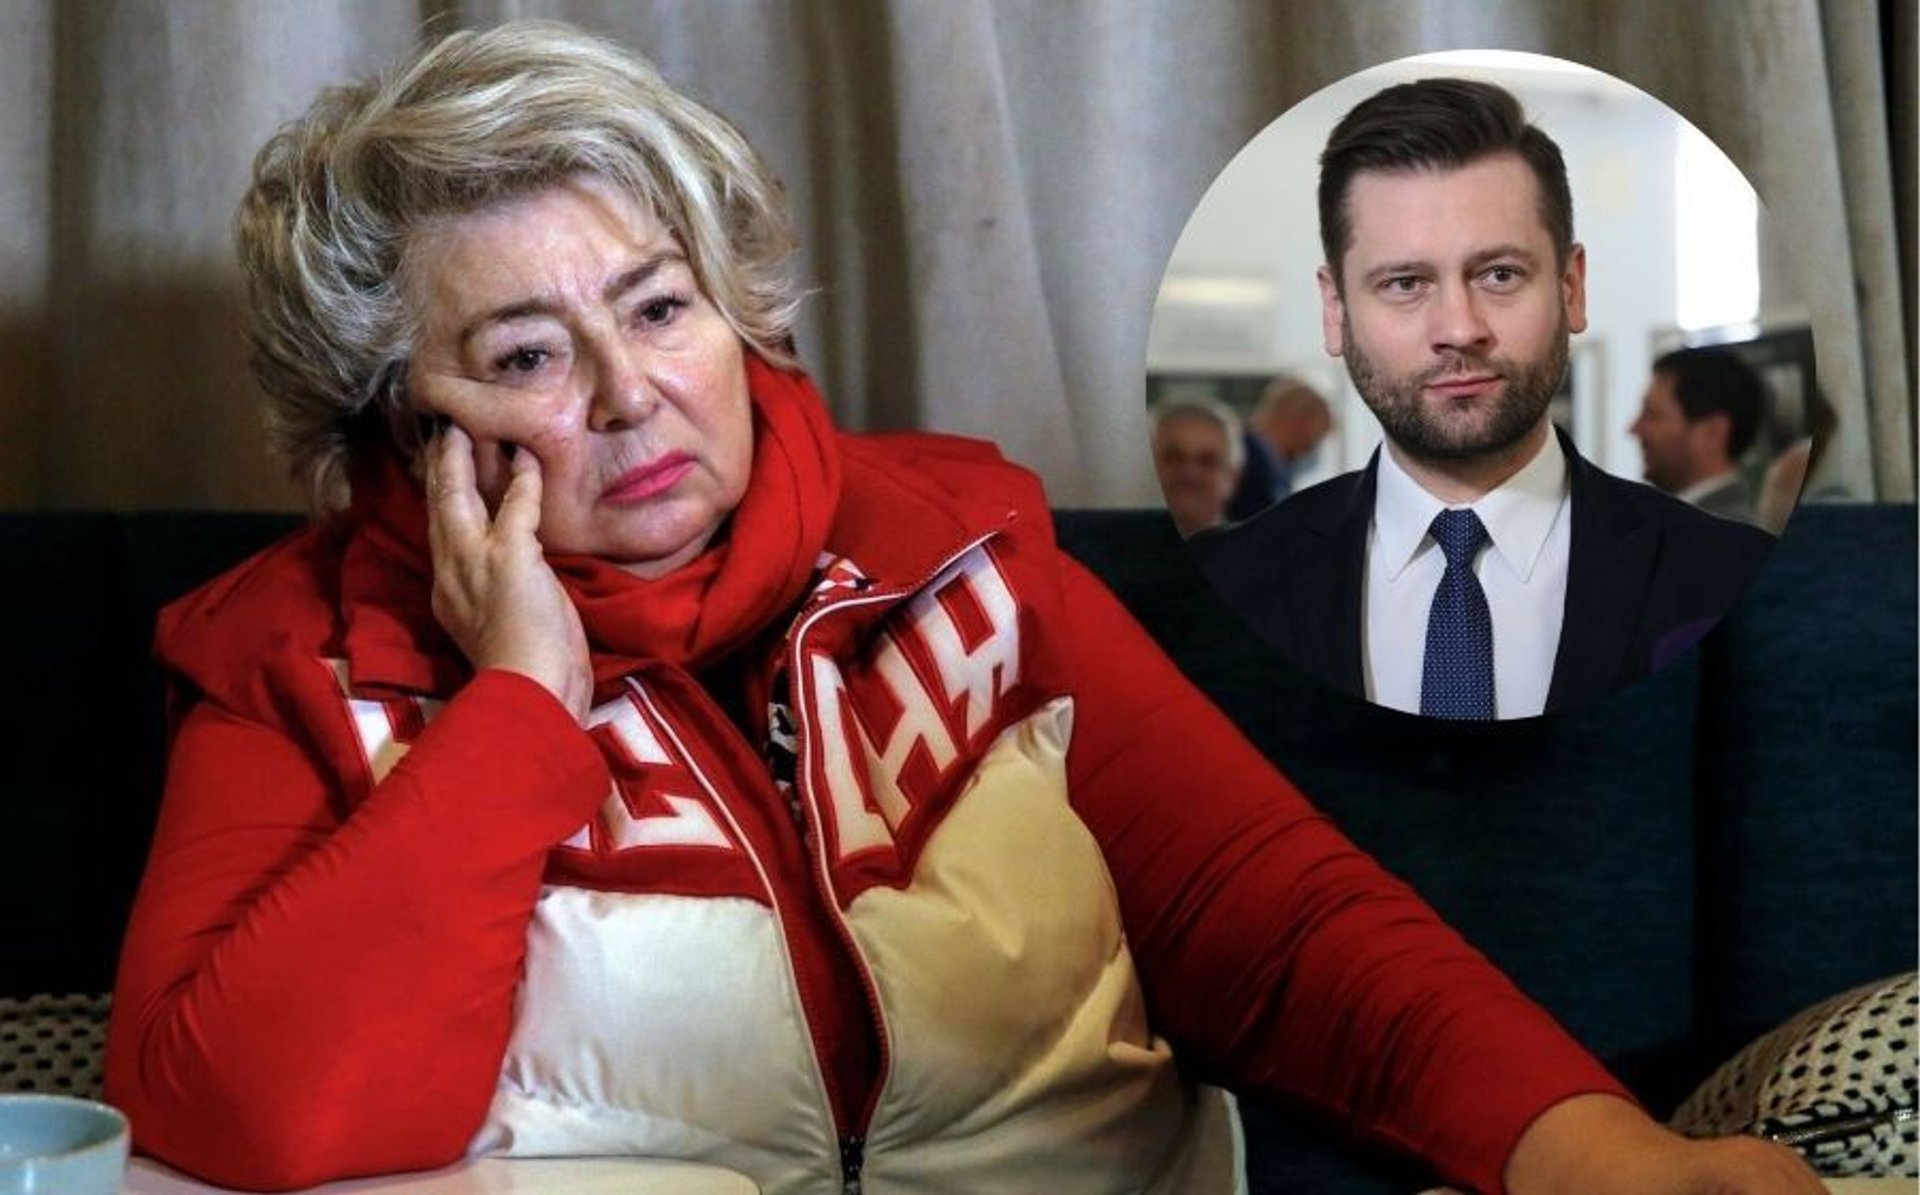 Rosyjska łyżwiarka obraziła Polaków. Odpowiedź ministra Bortniczuka trafia w sedno 